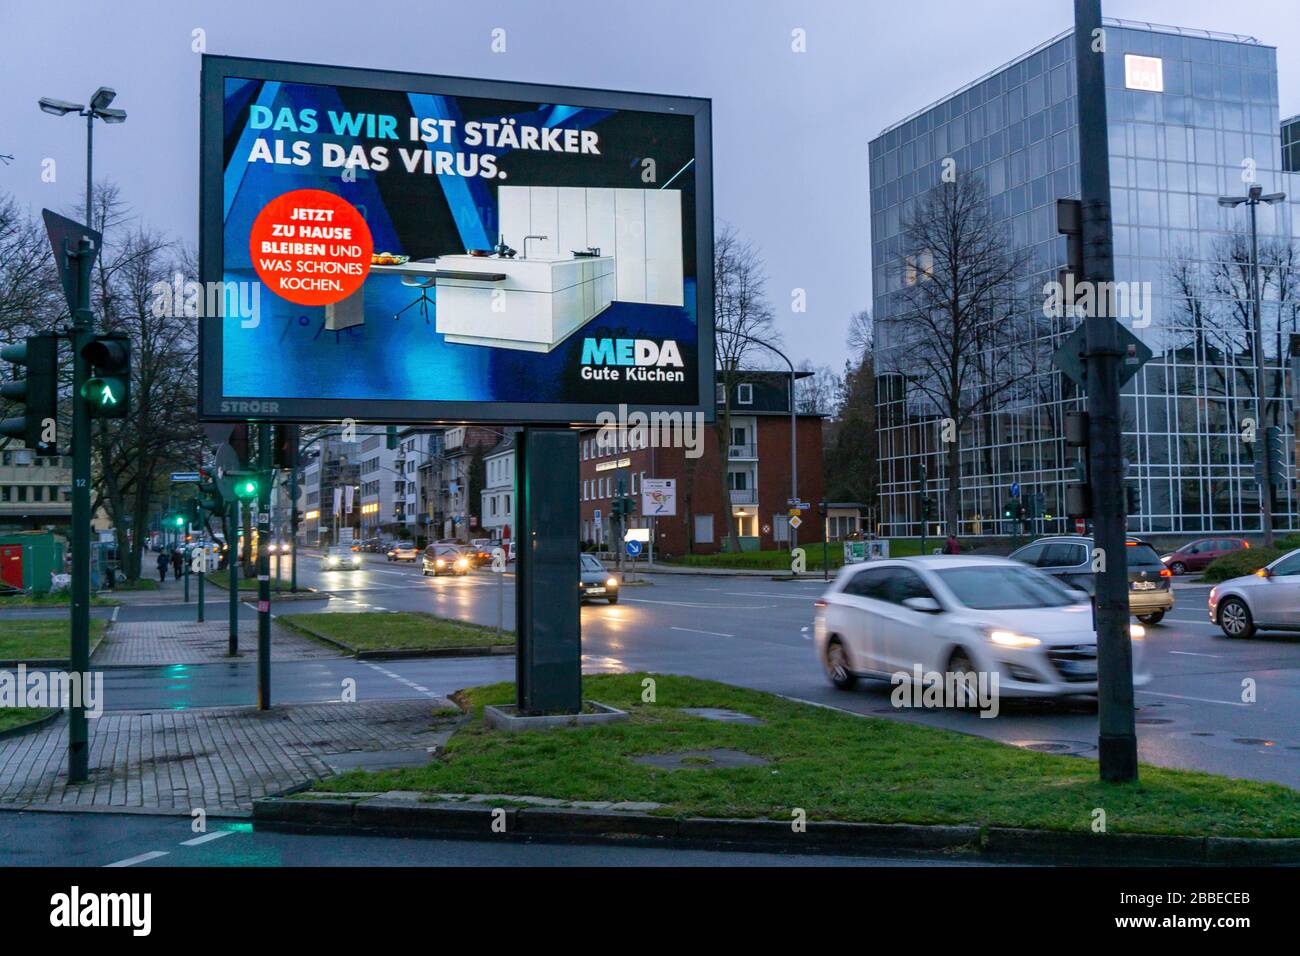 Werbung im Hinblick auf die Corona-Epidemie, MEDA Good Kitchen, LED Roadside Screen, digitale Werbemonitore, Auswirkungen der Coronakrise Stockfoto